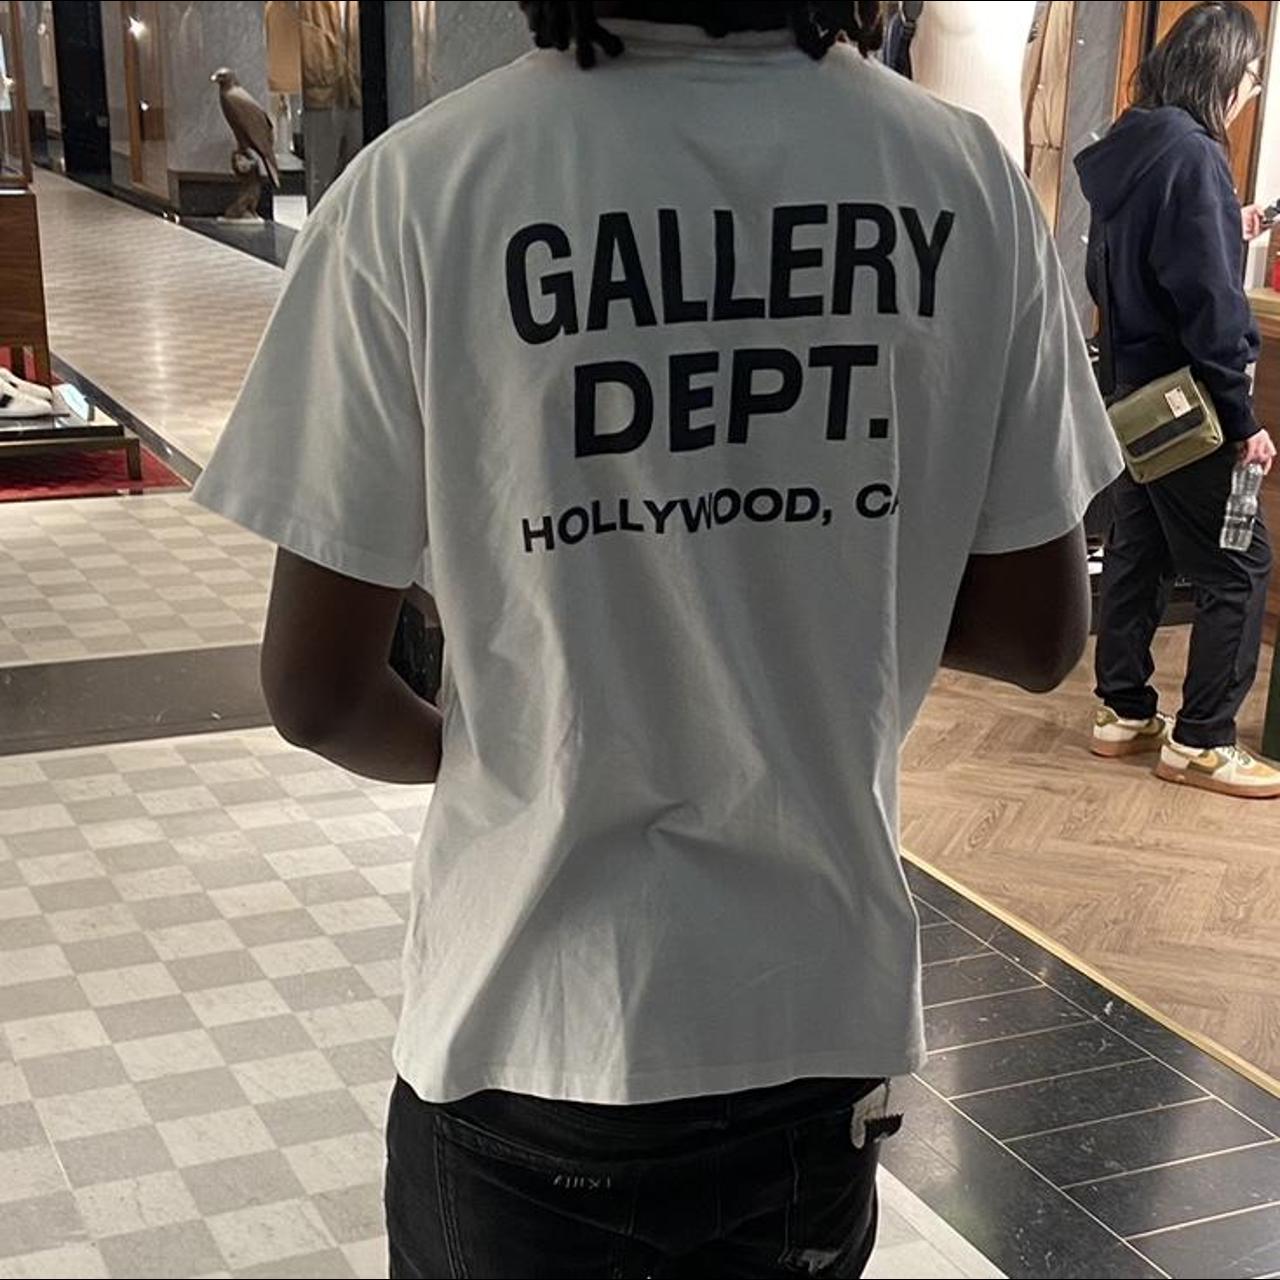 Gallery Dept. Men's T-shirt | Depop